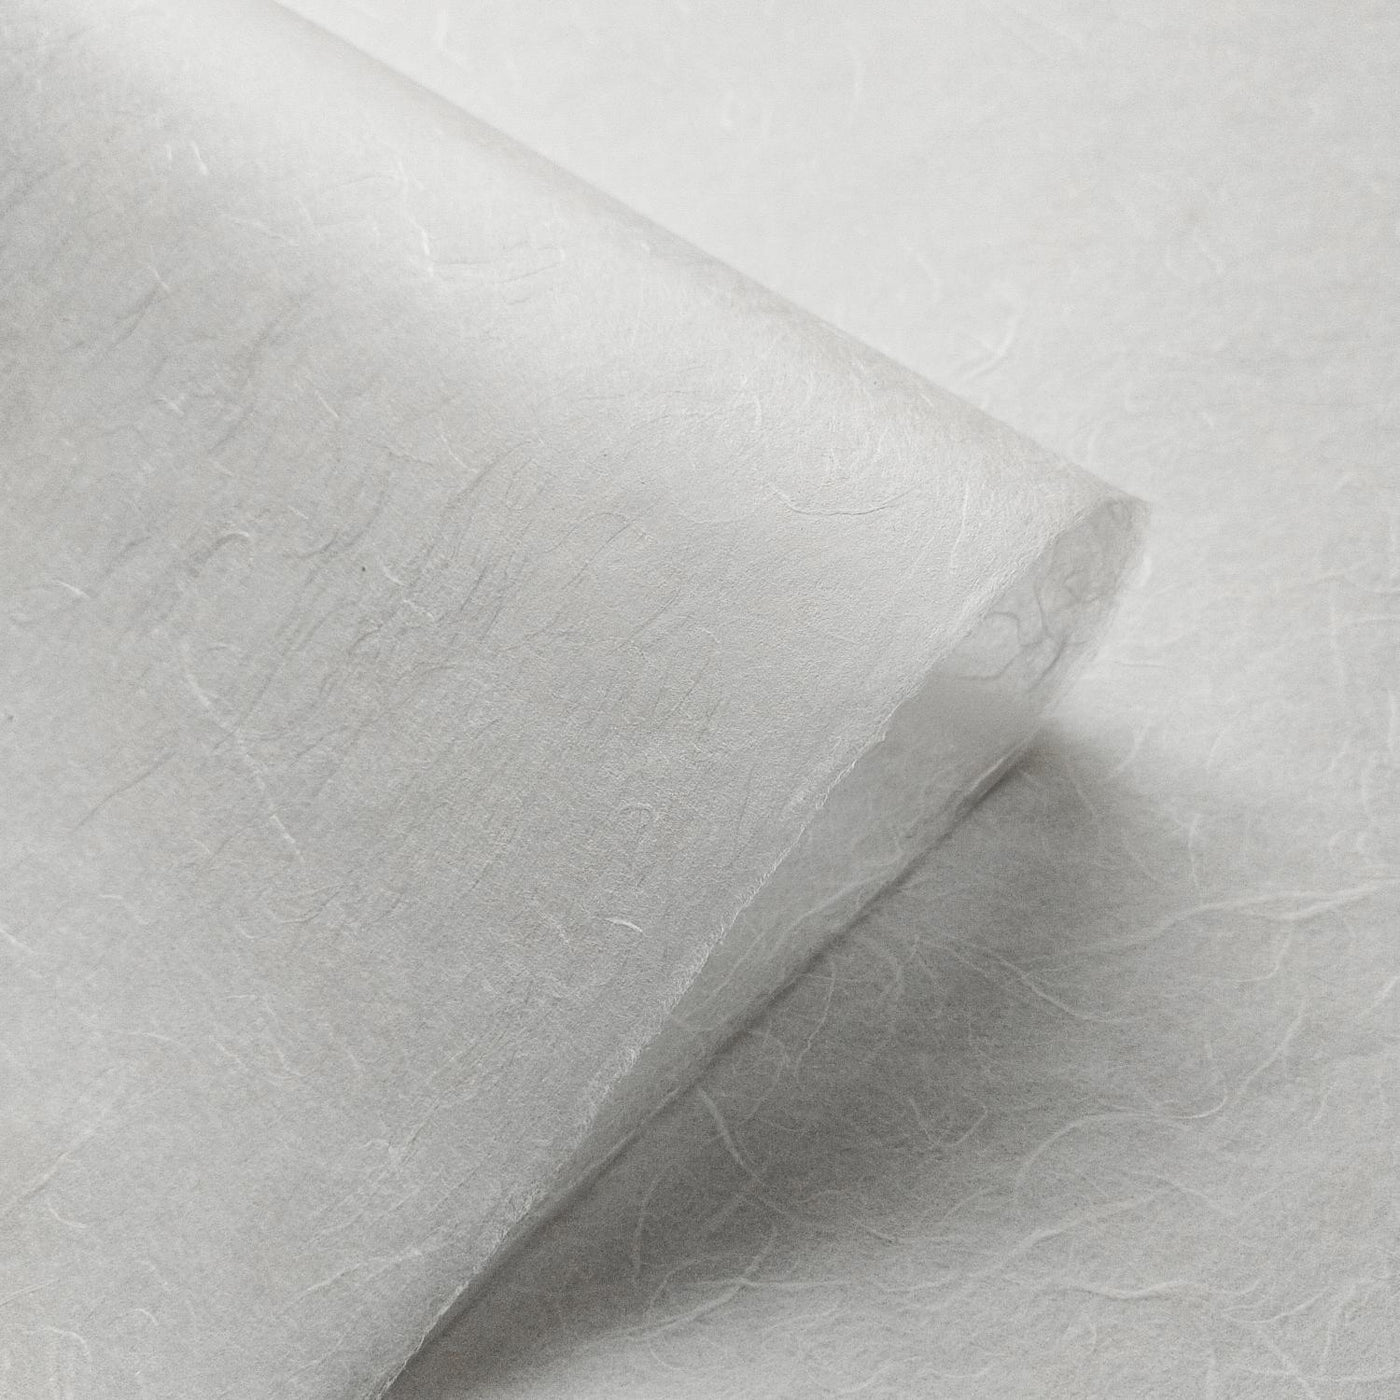 Unryu Kozo Mulberry Paper (White)